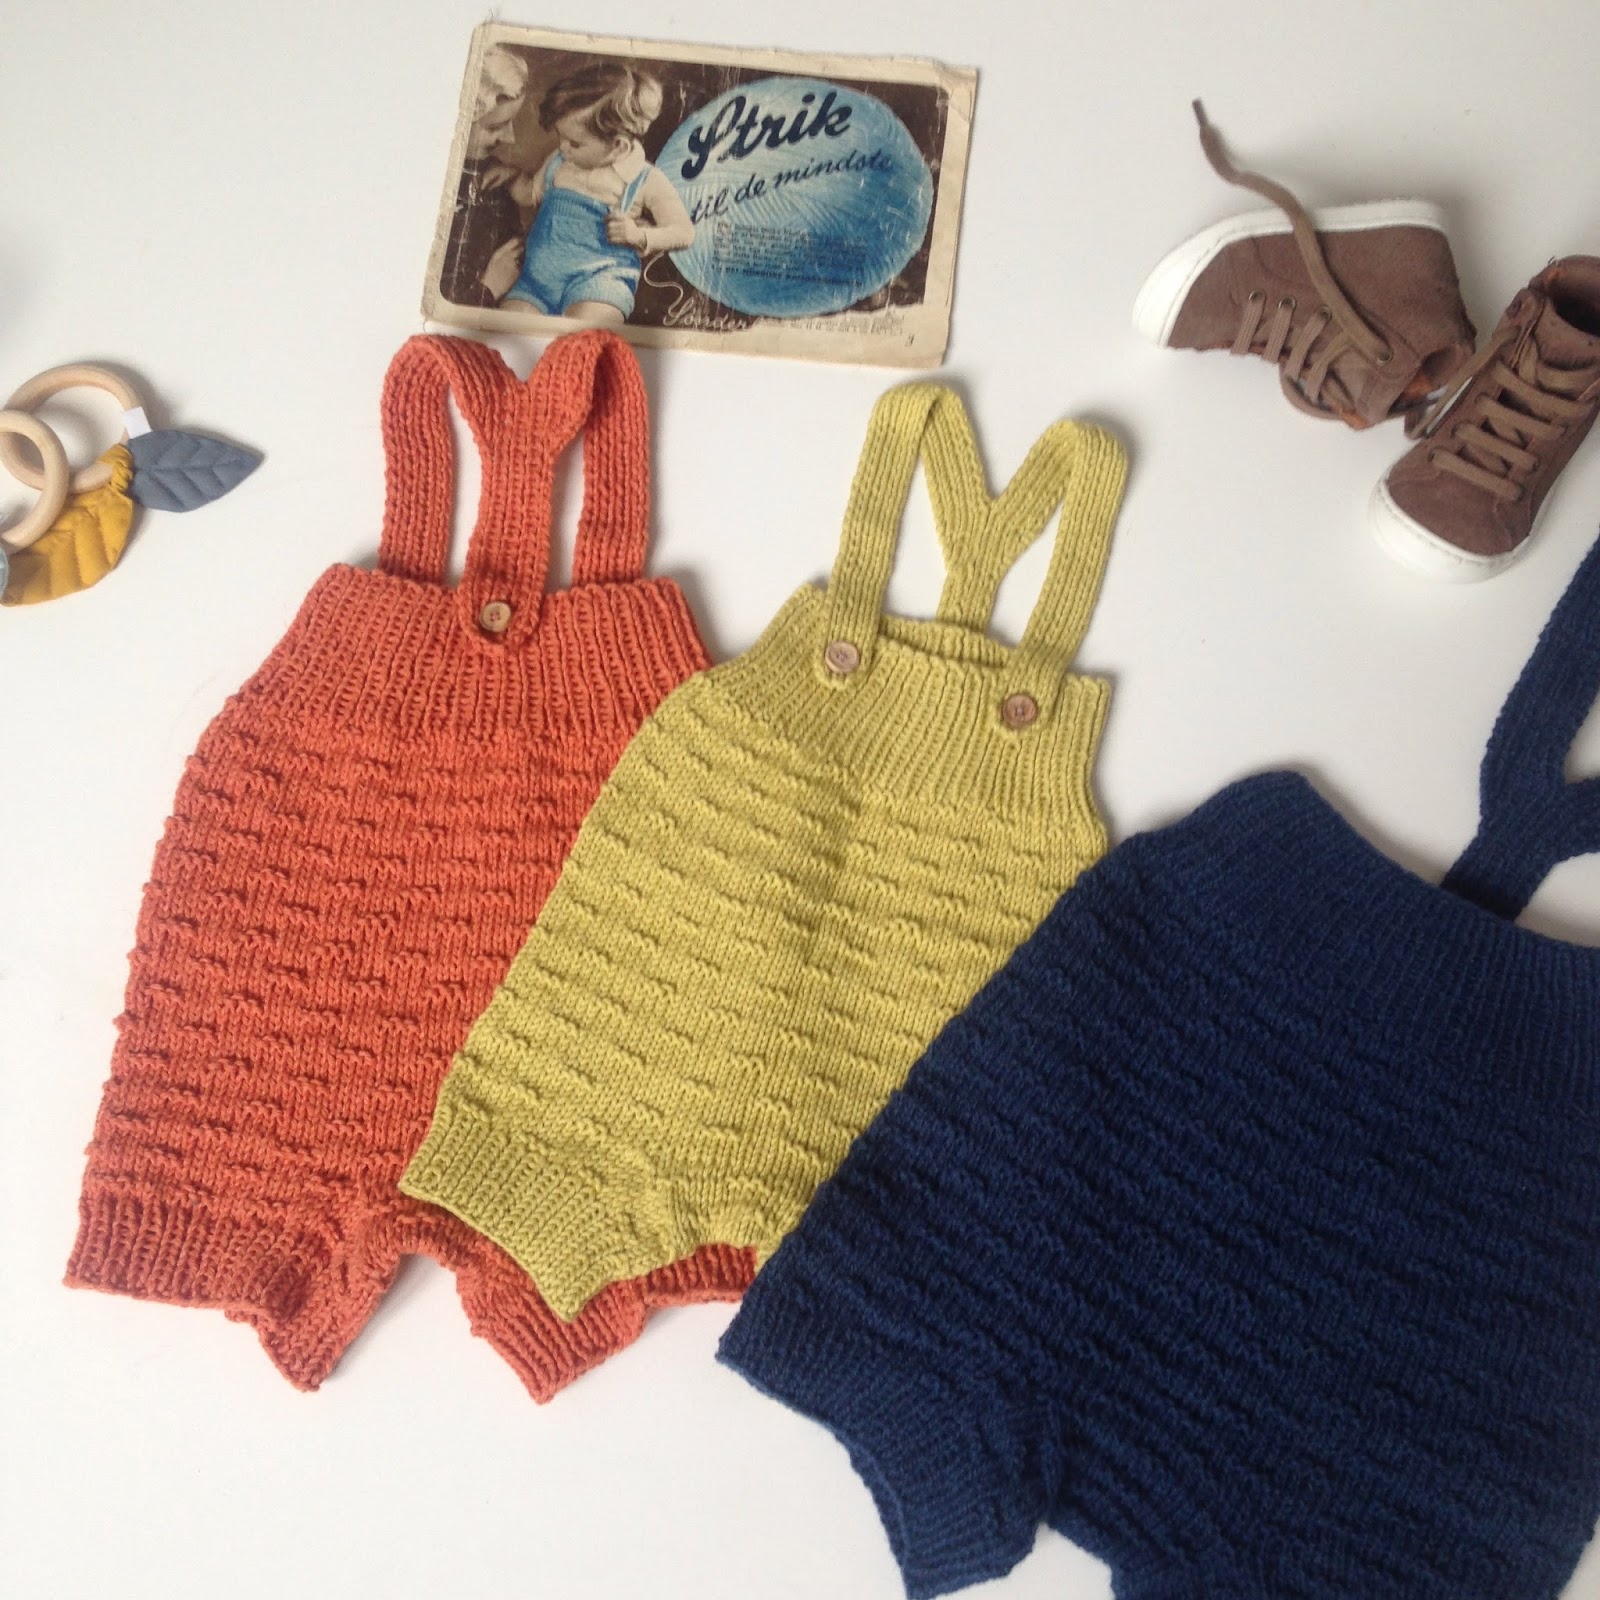 Knitting By Kaae: Farverigt vintage inspireret strik til de mindste (nyt babyhæfte babystrik)